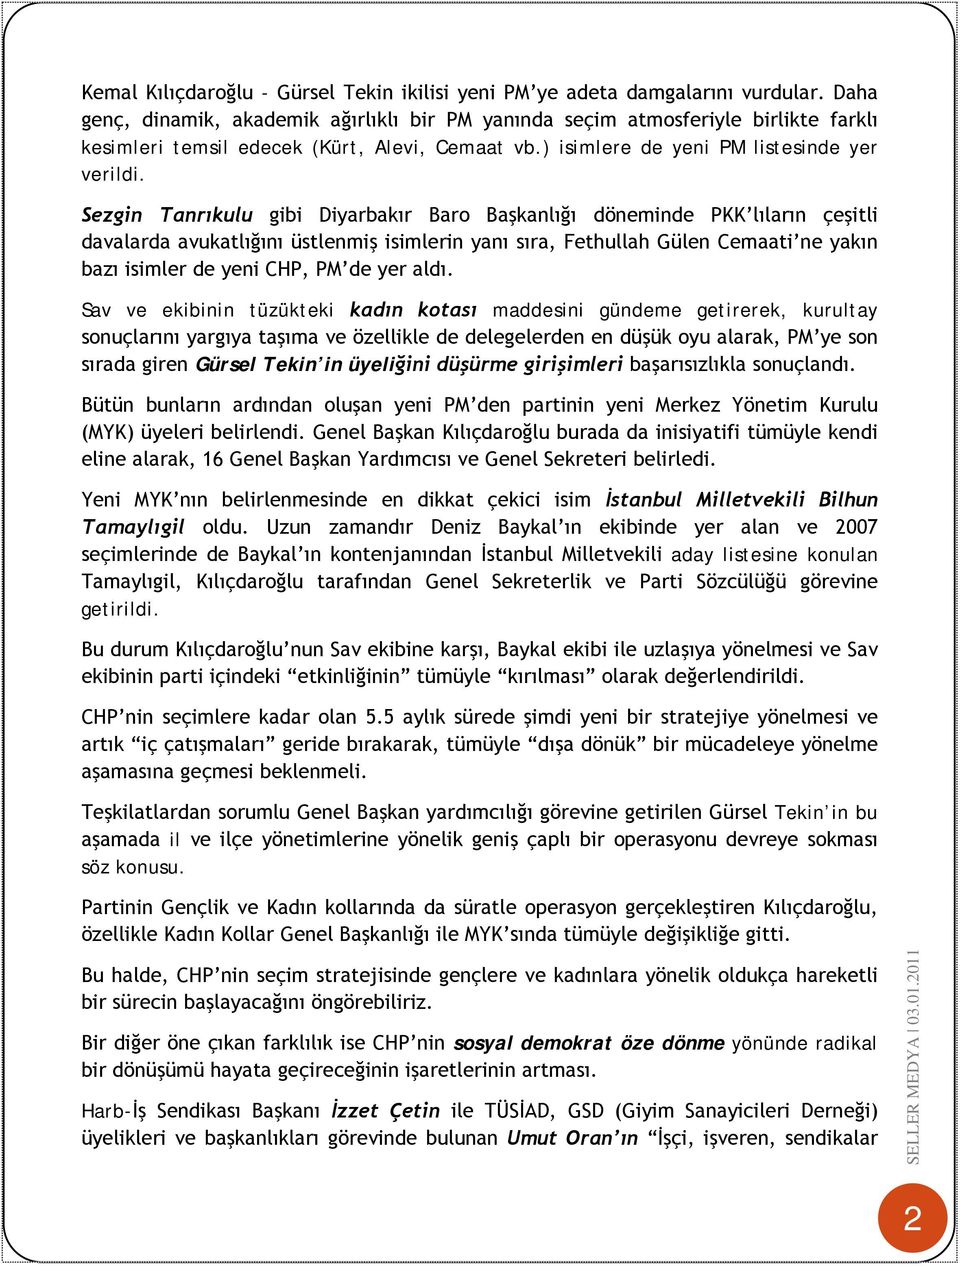 Sezgin Tanrıkulu gibi Diyarbakır Baro Başkanlığı döneminde PKK lıların çeşitli davalarda avukatlığını üstlenmiş isimlerin yanı sıra, Fethullah Gülen Cemaati ne yakın bazı isimler de yeni CHP, PM de